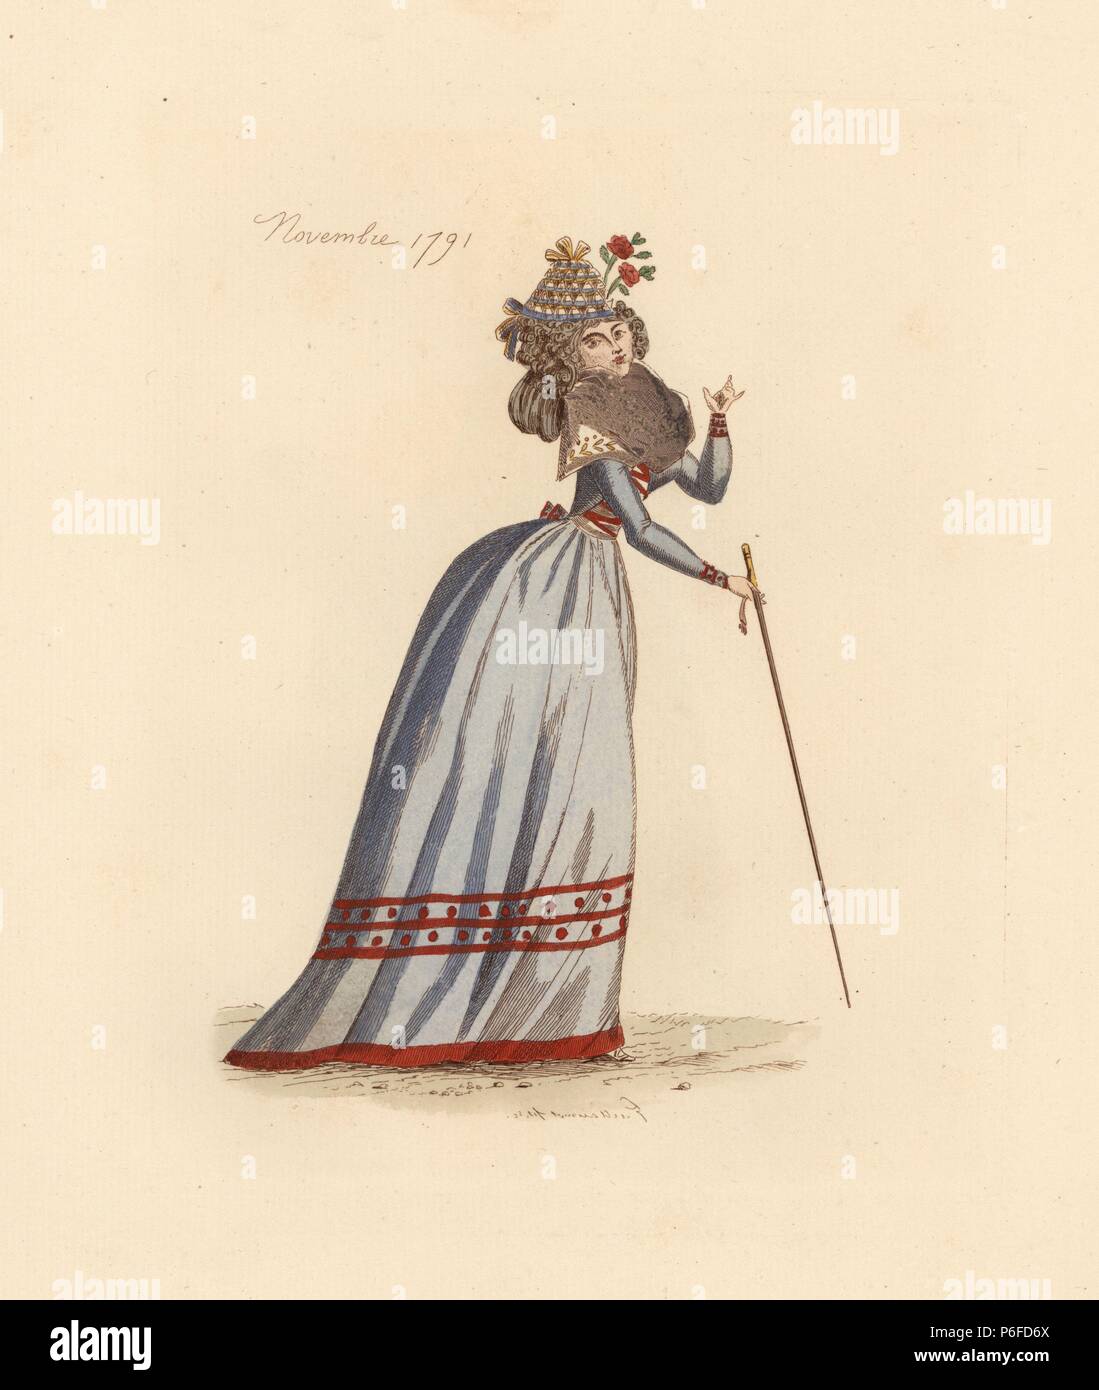 Femme française portant les vêtements de novembre 1791. Elle porte un  bonnet de fleurs, pleine perruque, grand fichu (foulard), équipé robe et  jupes complet. Elle est titulaire d'une canne. Gravure coloriée par